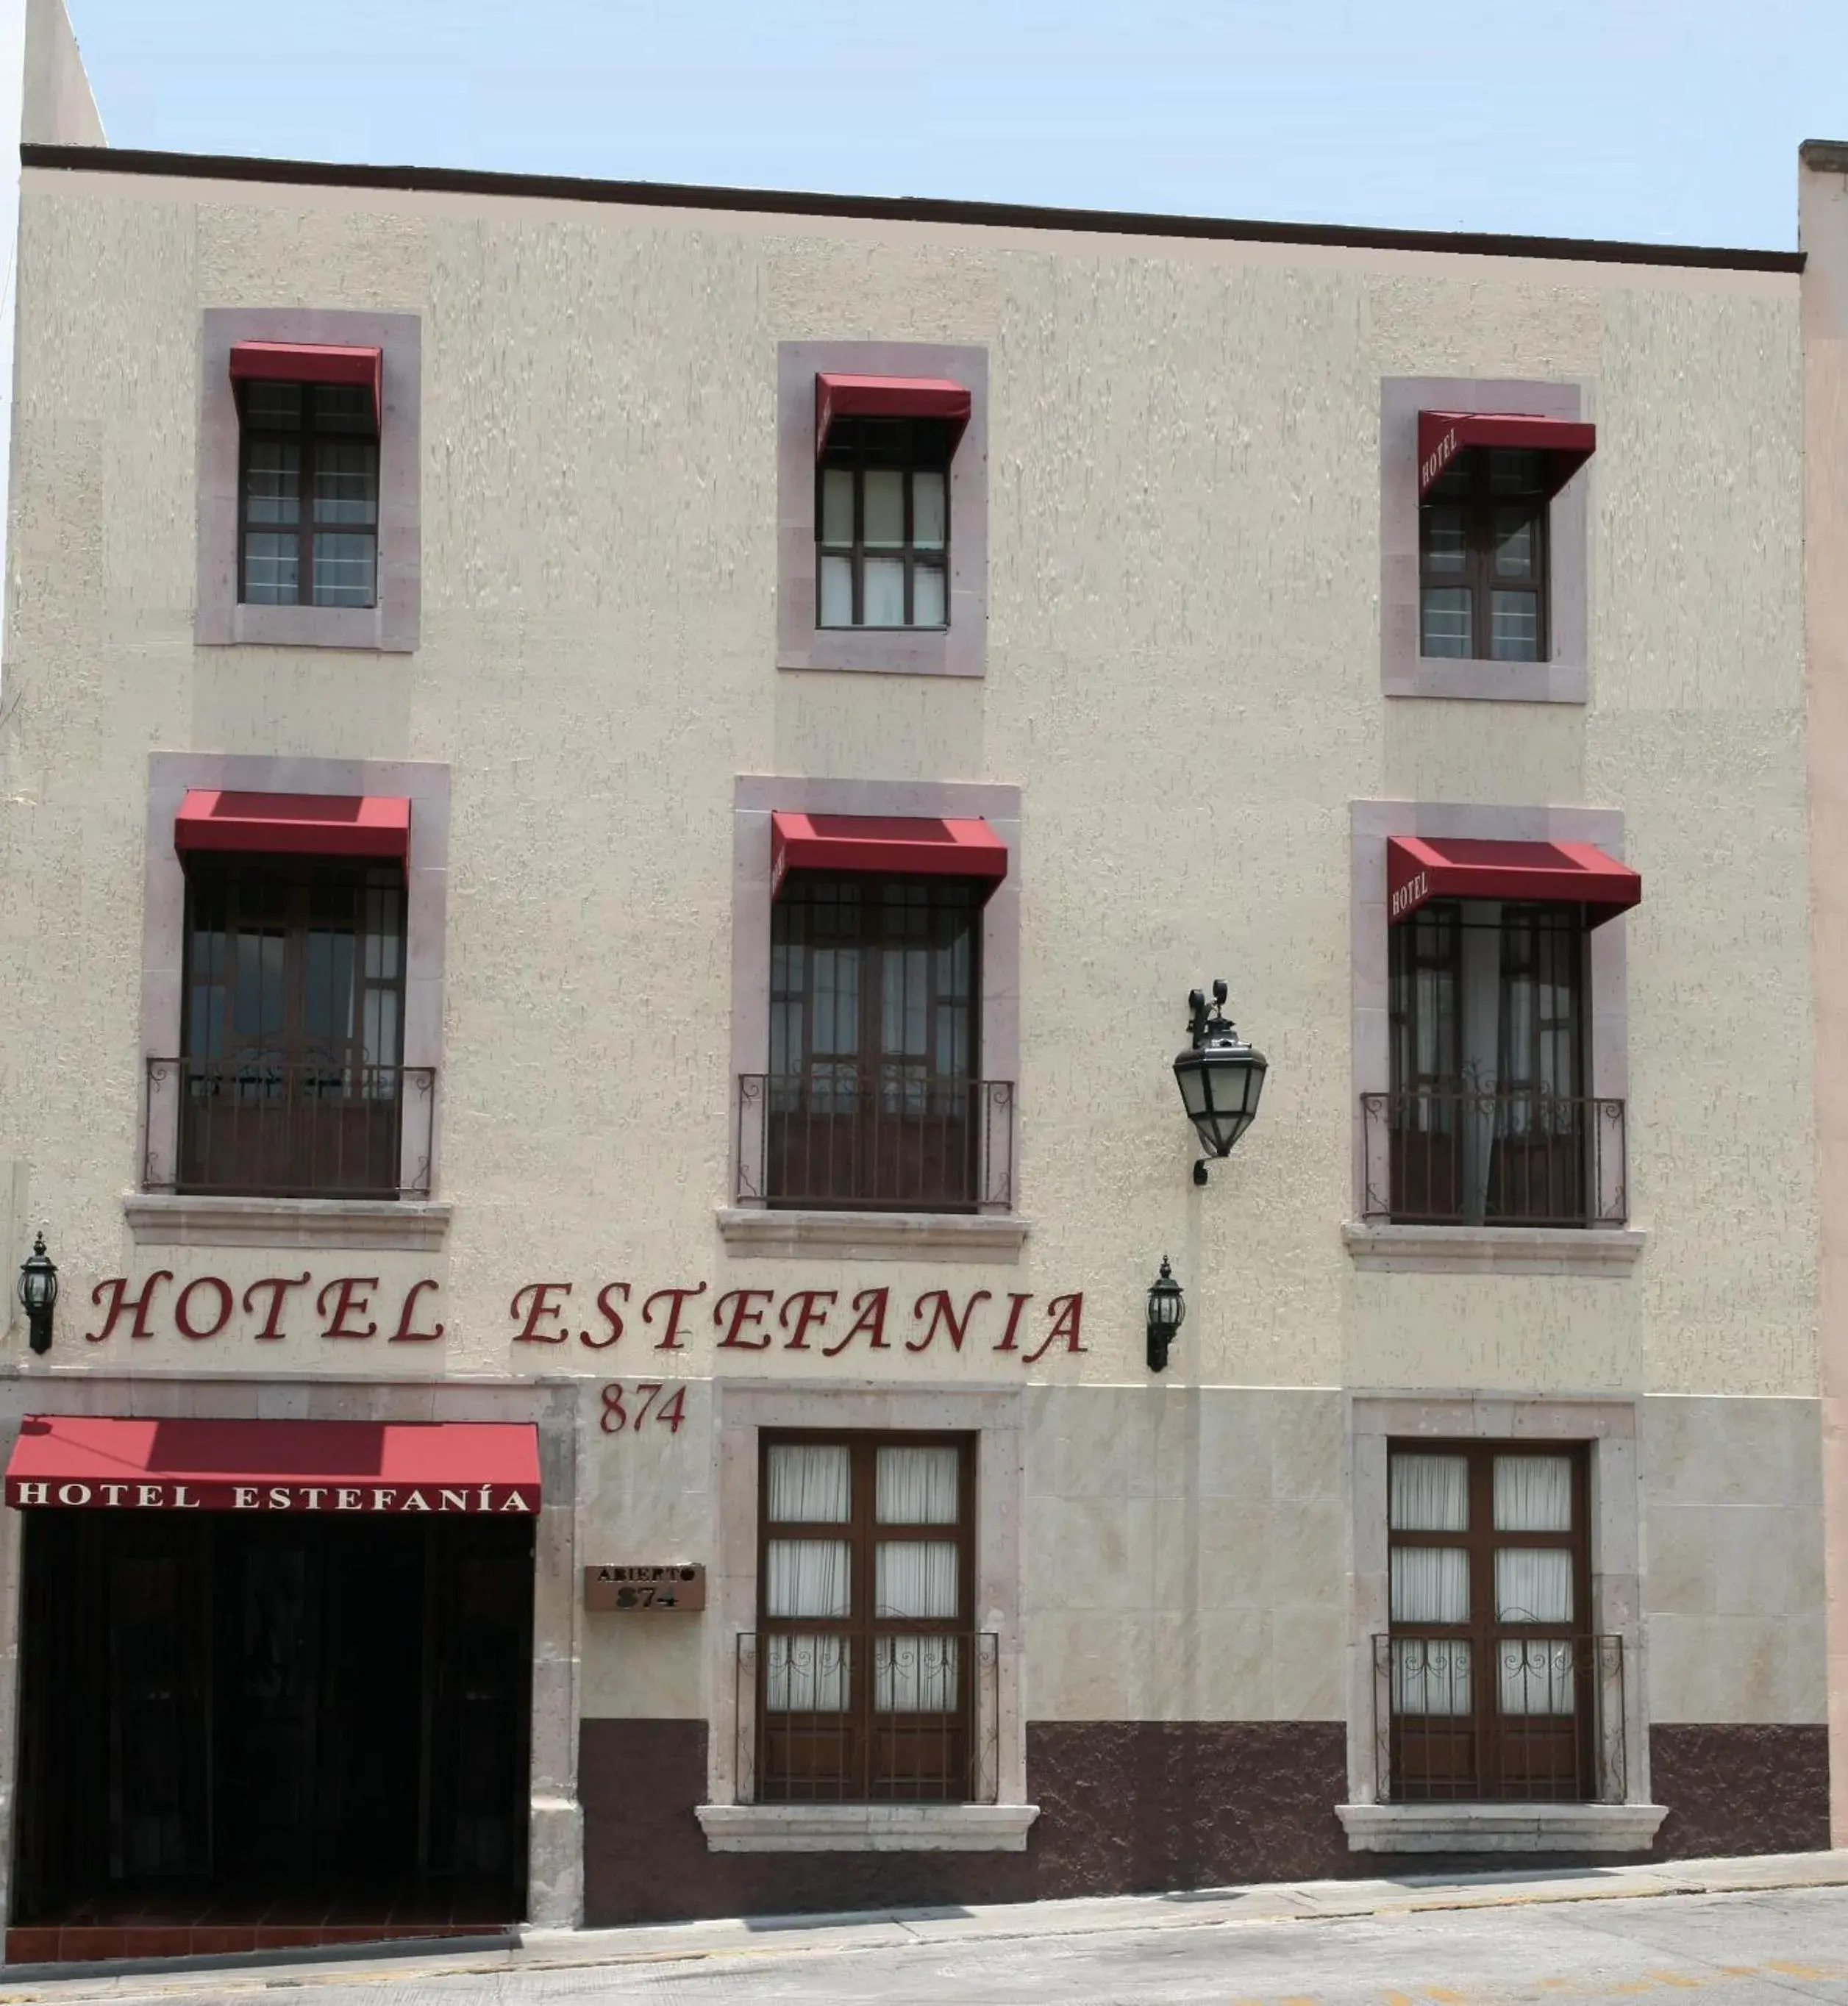 Facade/entrance in Hotel Estefania